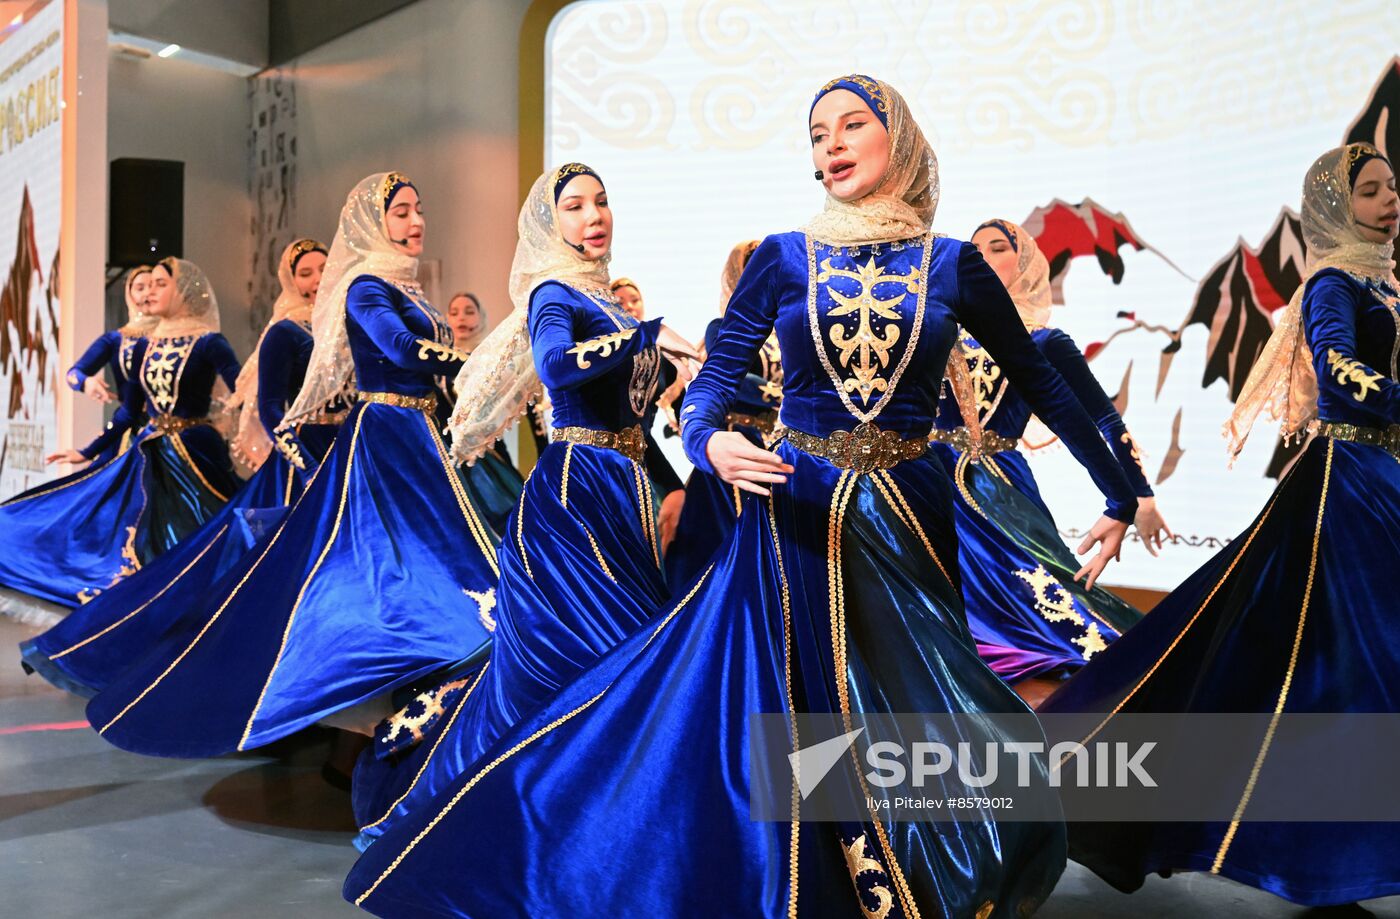 RUSSIA EXPO. Chechen Republic Day